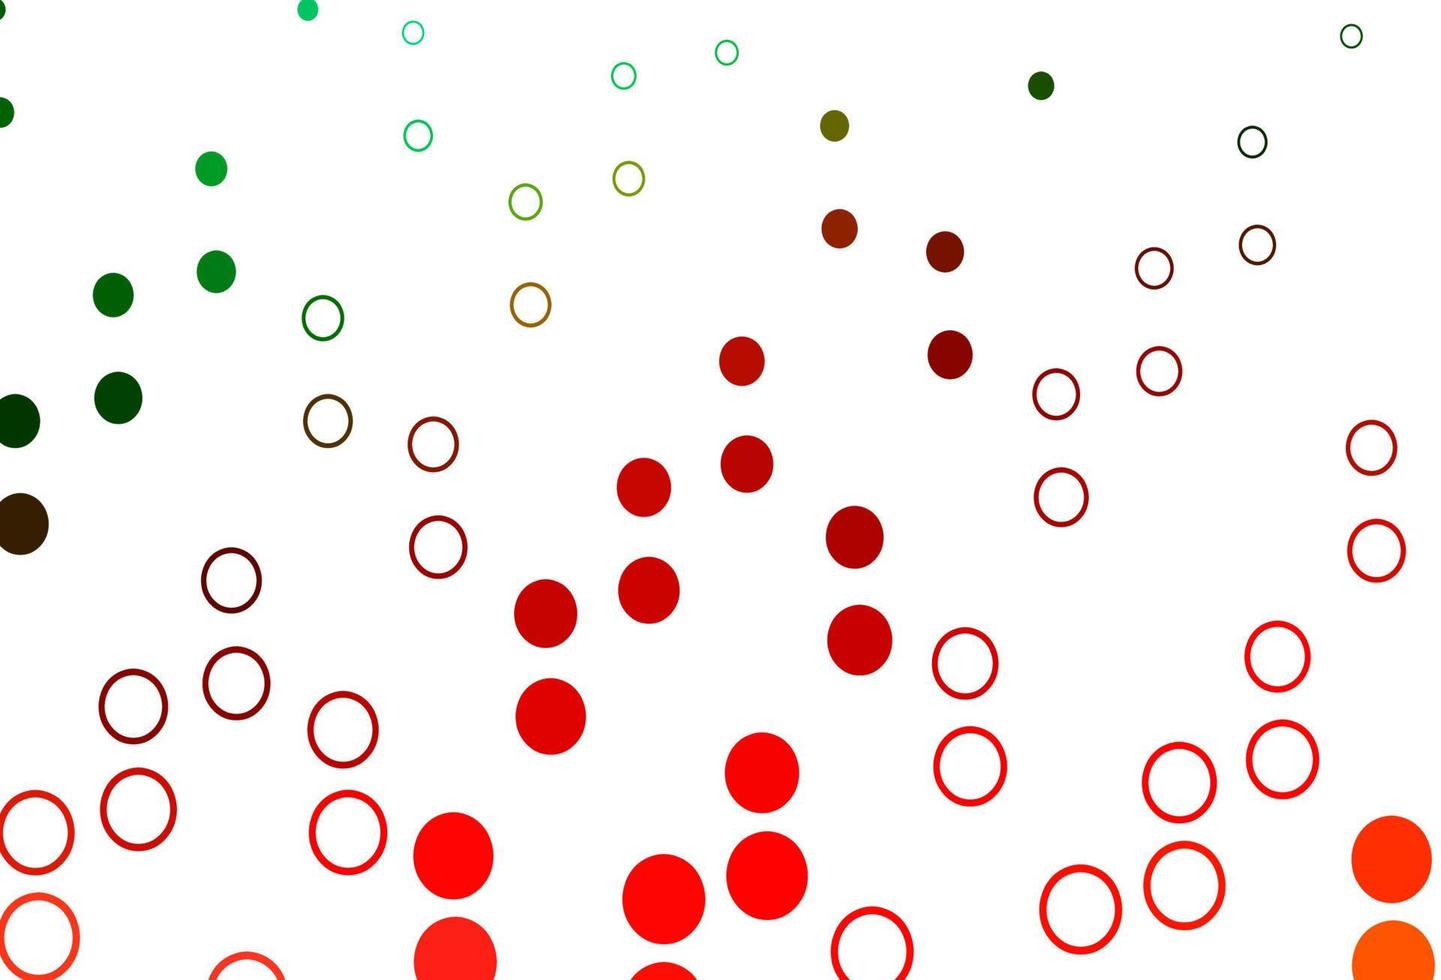 ljusgrön, röd vektorlayout med cirkelformer. vektor